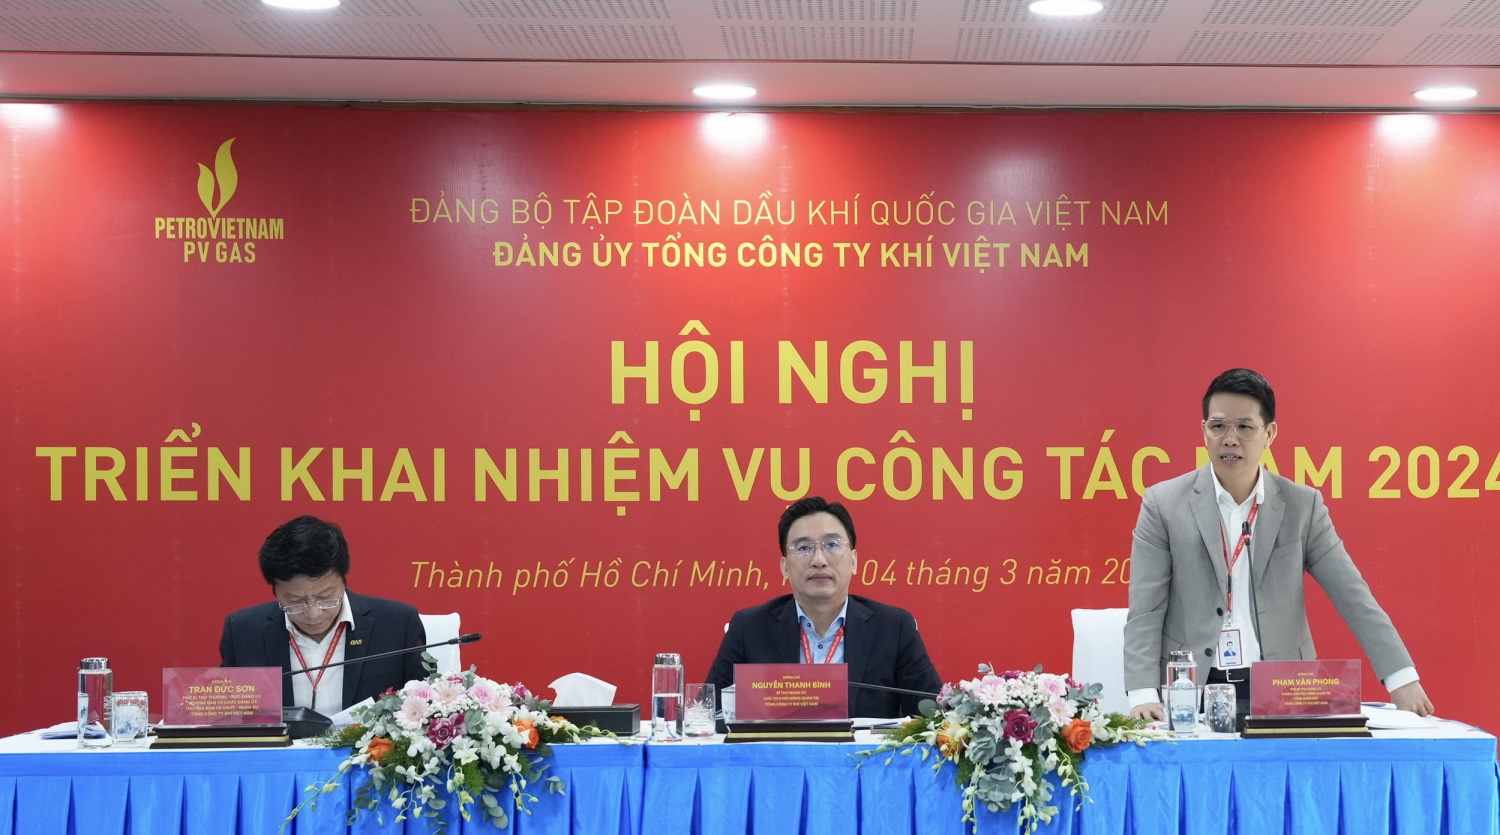 Đồng chí Phạm Văn Phong, Phó Bí thư Đảng ủy, Tổng Giám đốc PV GAS phát biểu